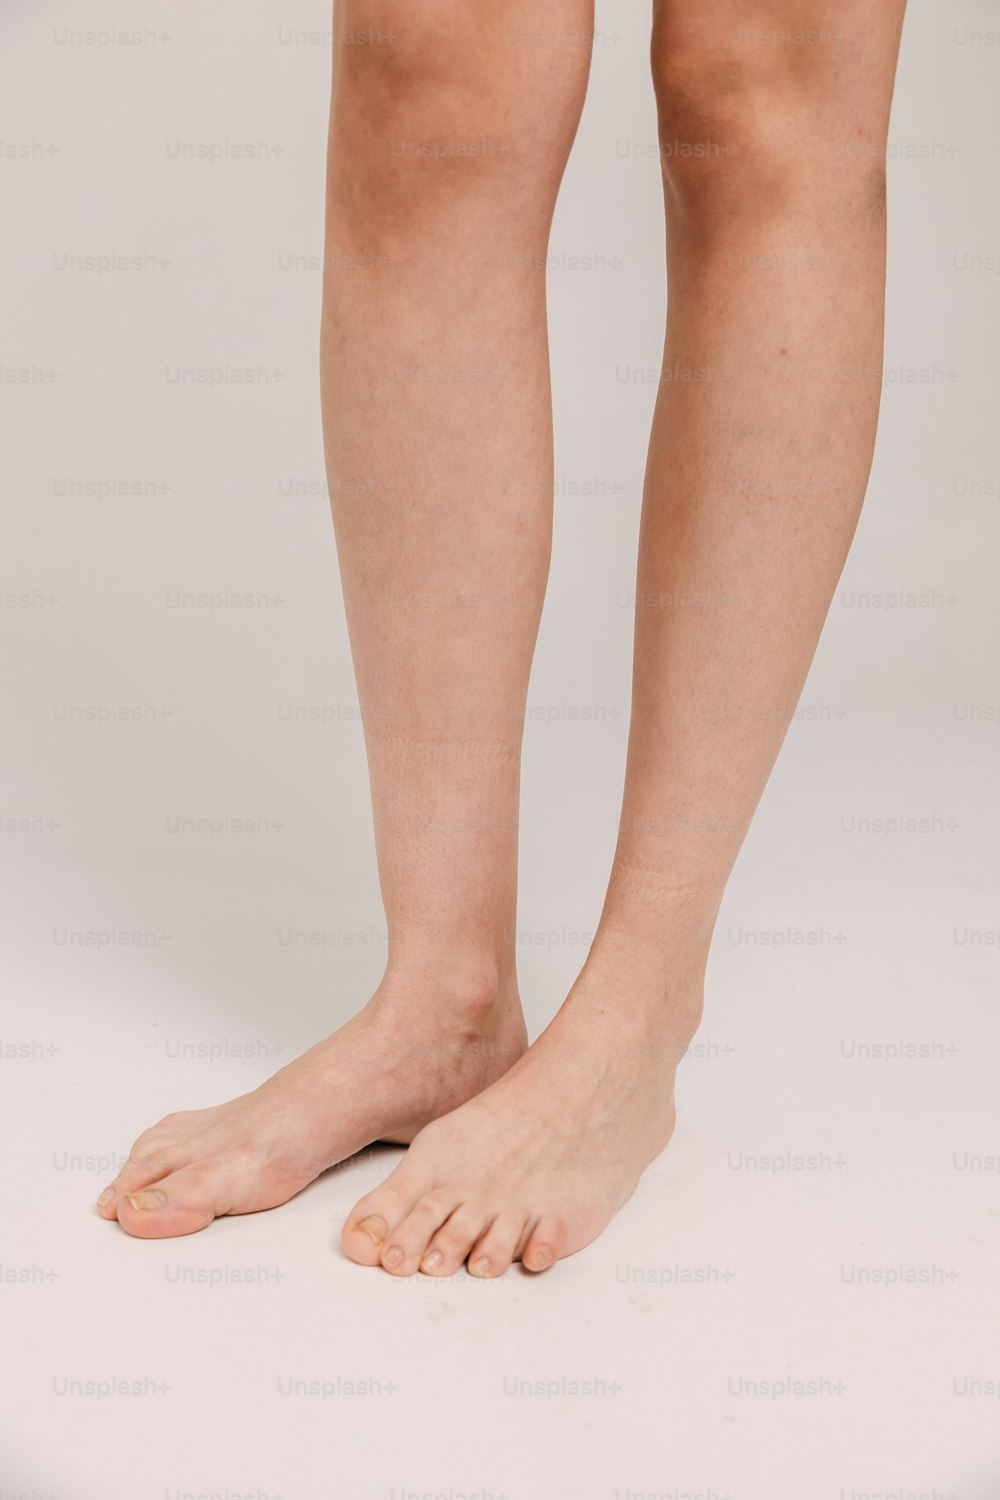 Se muestran las piernas desnudas y las piernas de una mujer